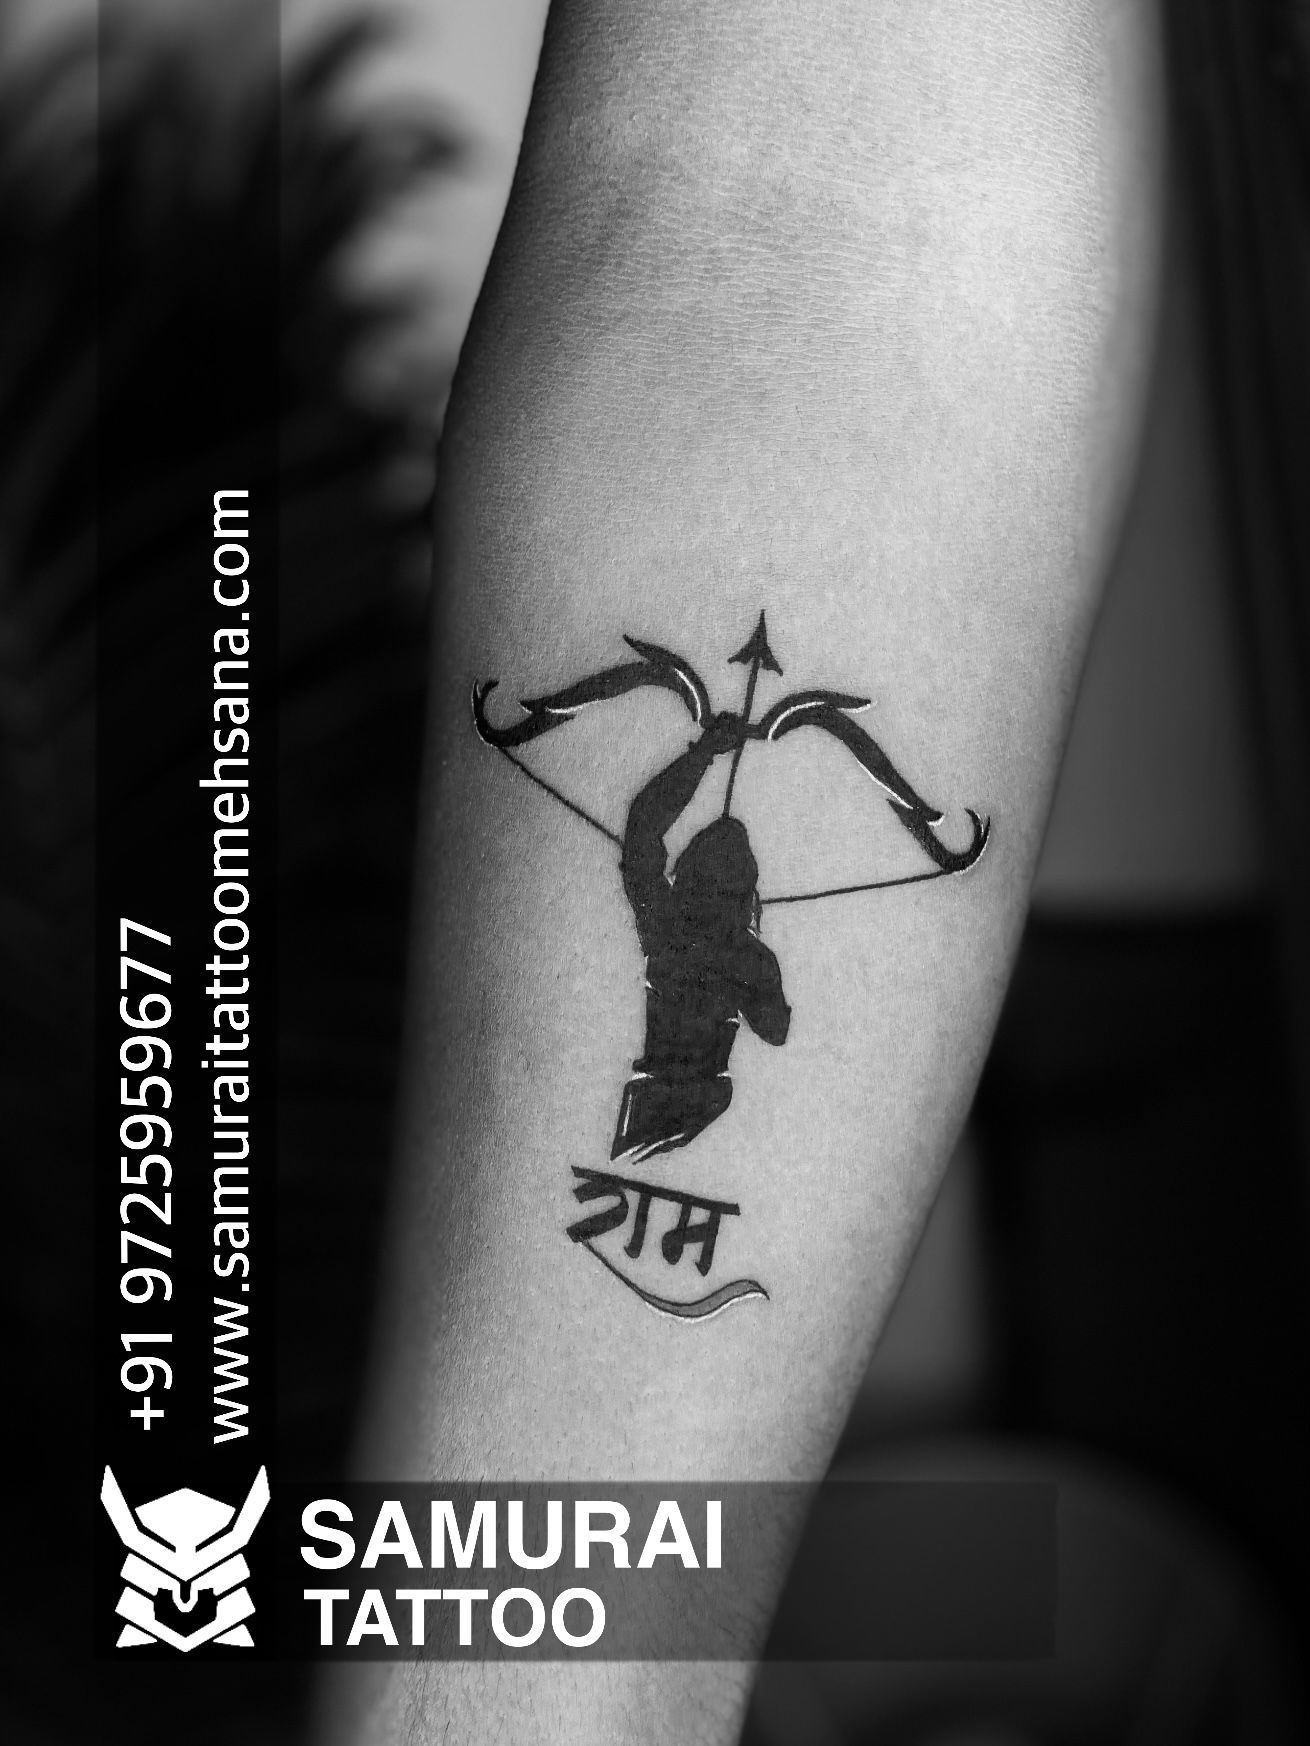 Tattoo uploaded by Vipul Chaudhary • Ram tattoo |Shree ram tattoo |Ram  tattoo ideas |Lord ram tattoo • Tattoodo